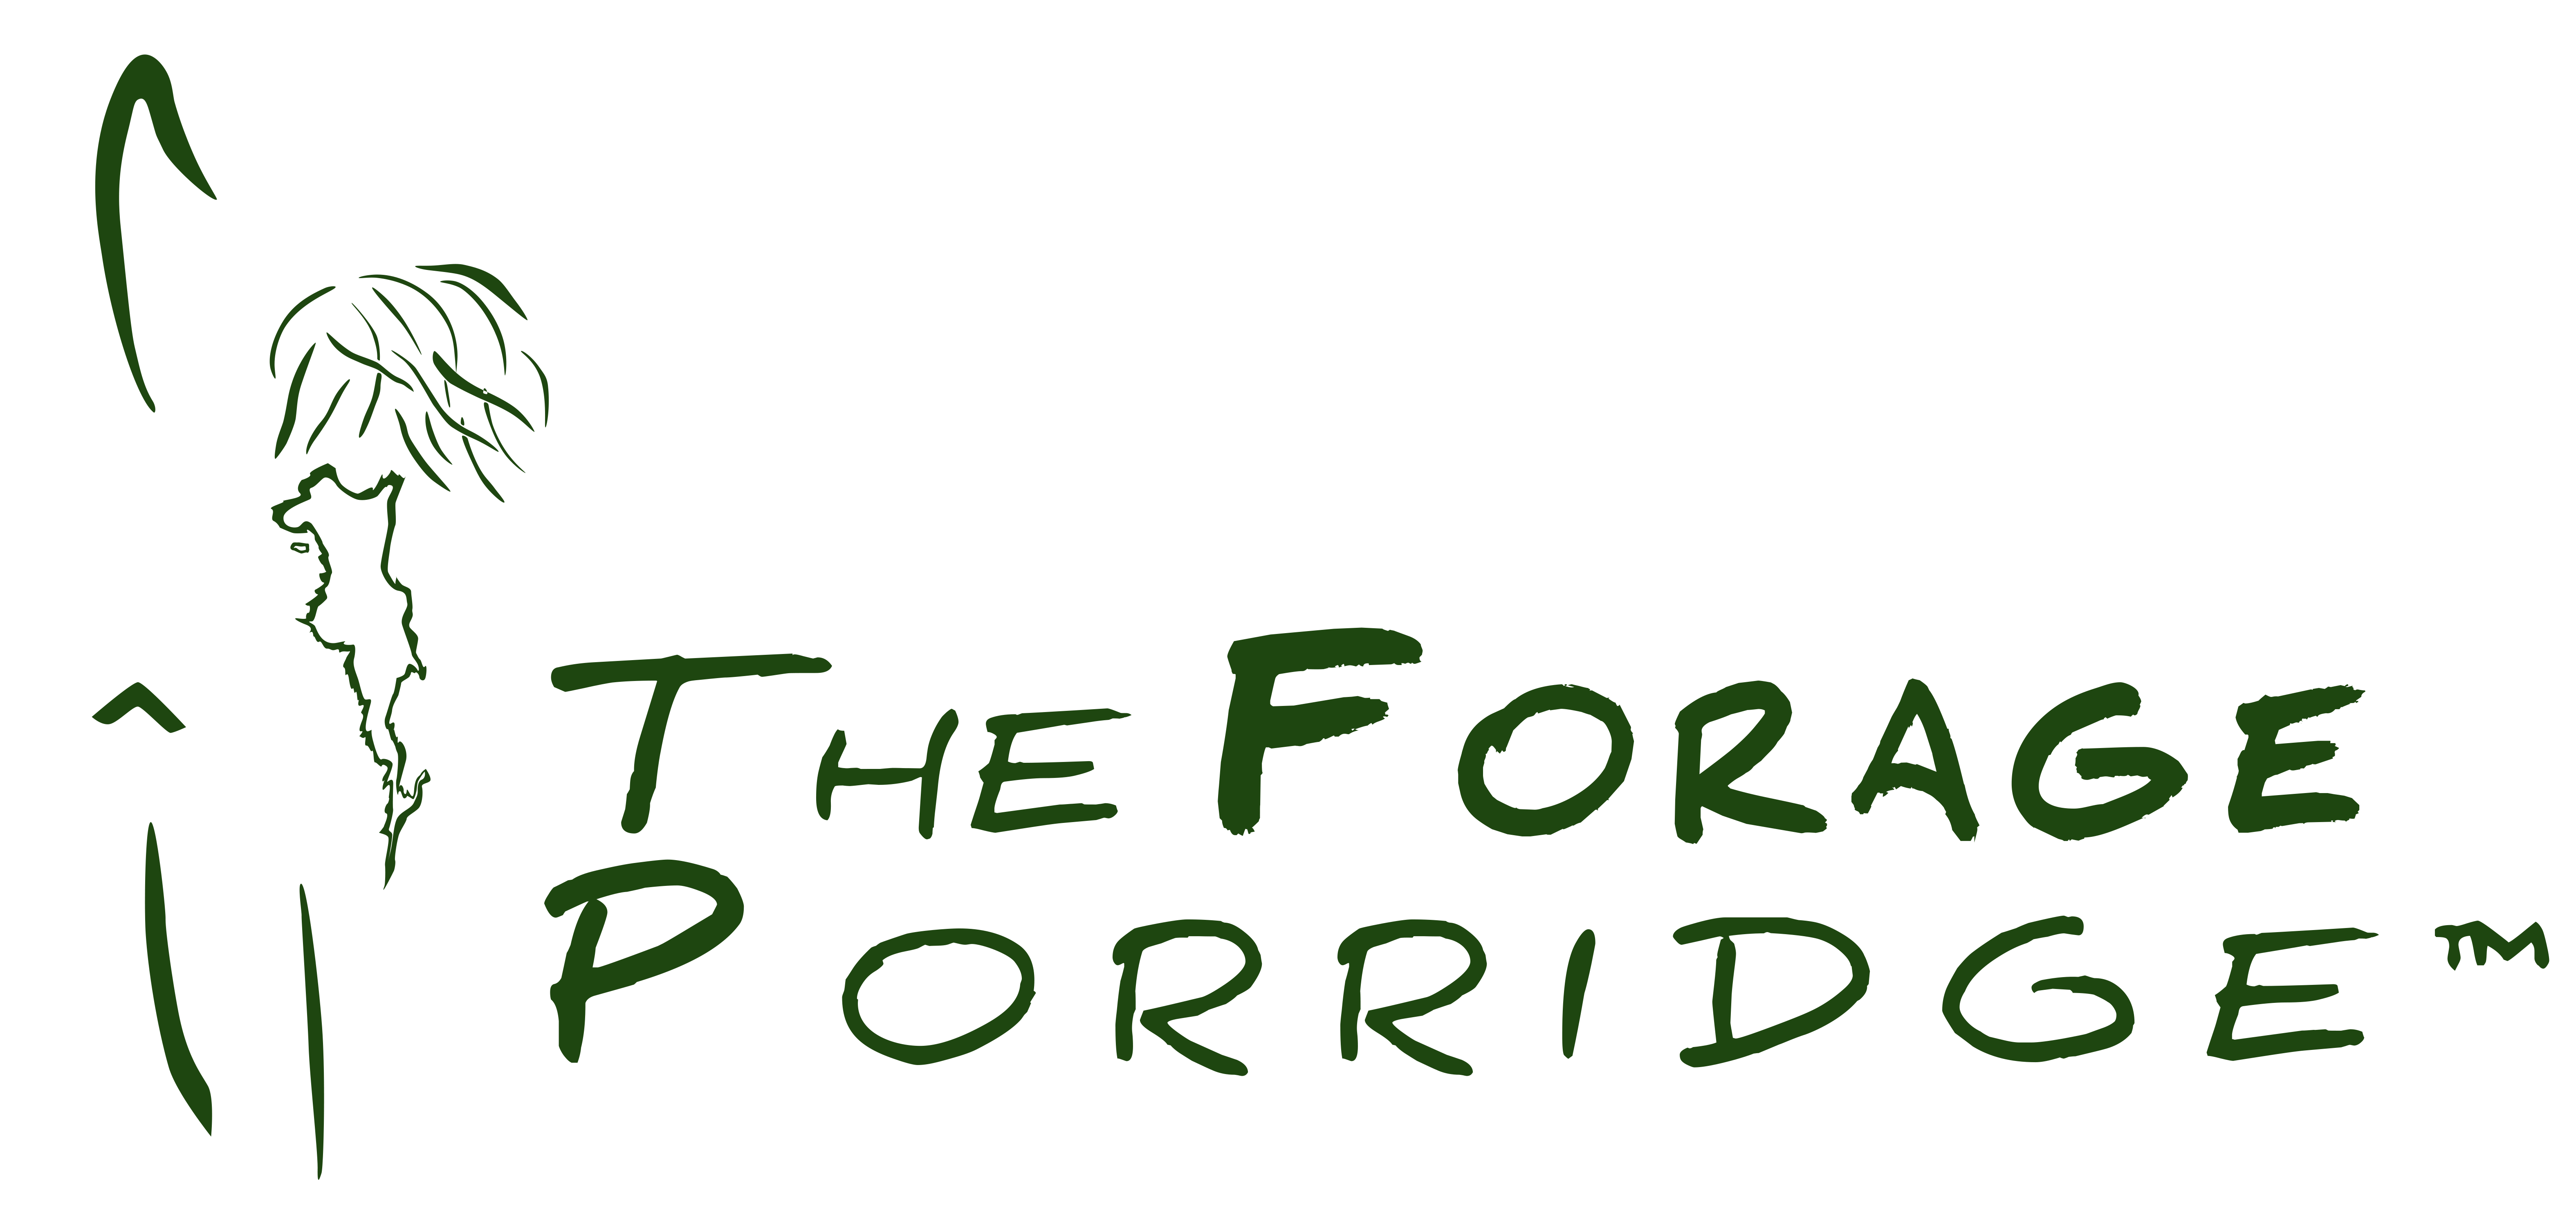 The Forage Porridge